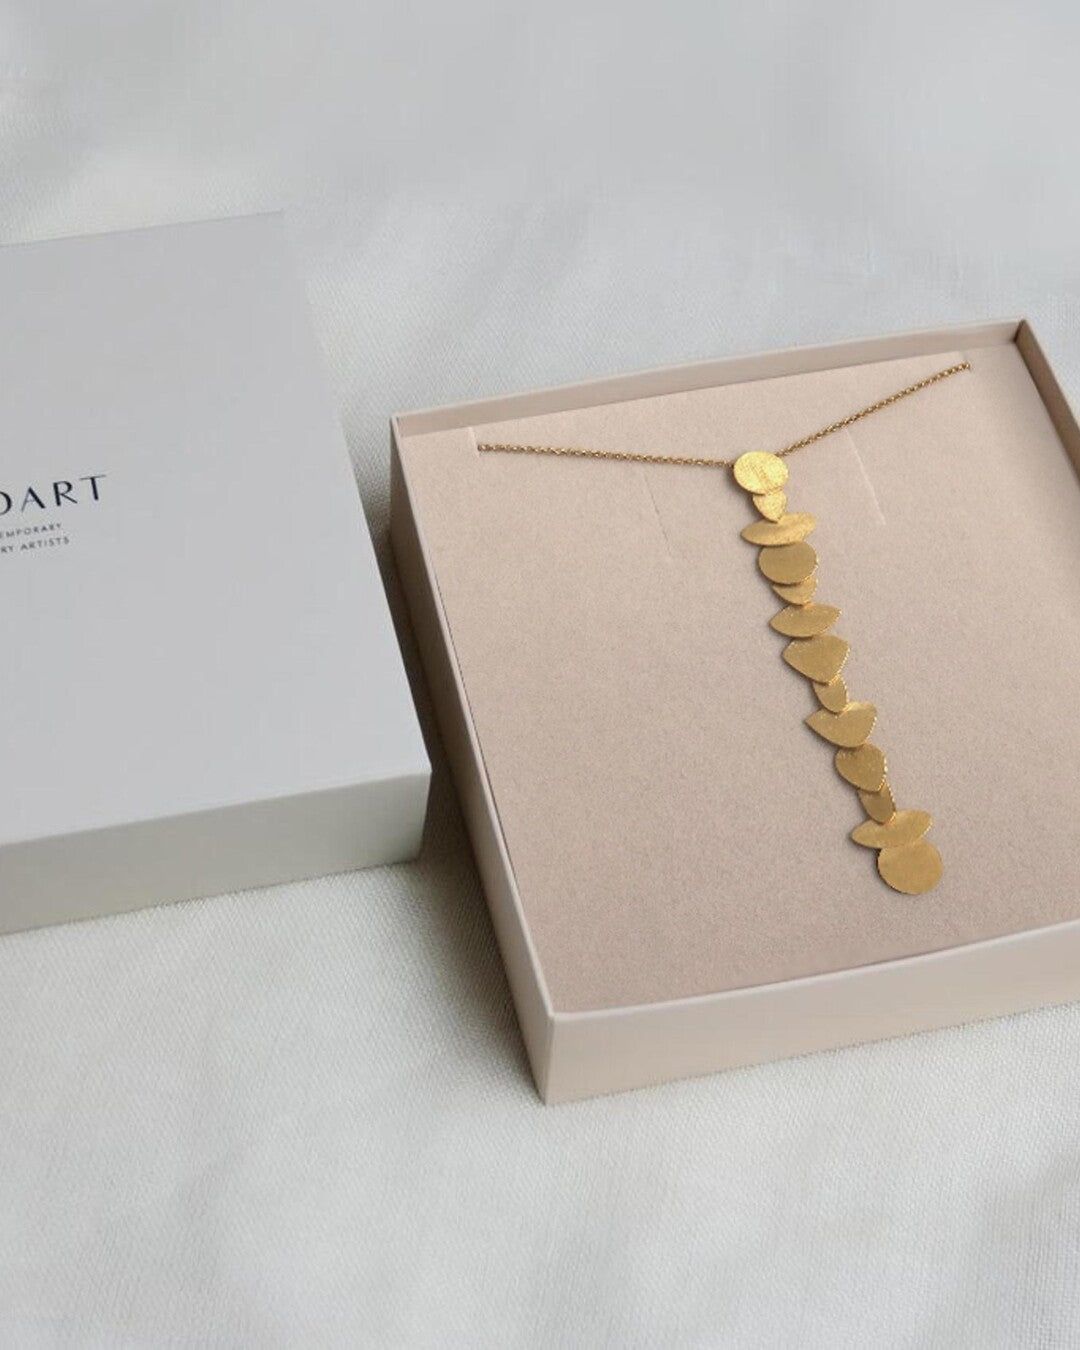 Handmade golden necklace - Joidart